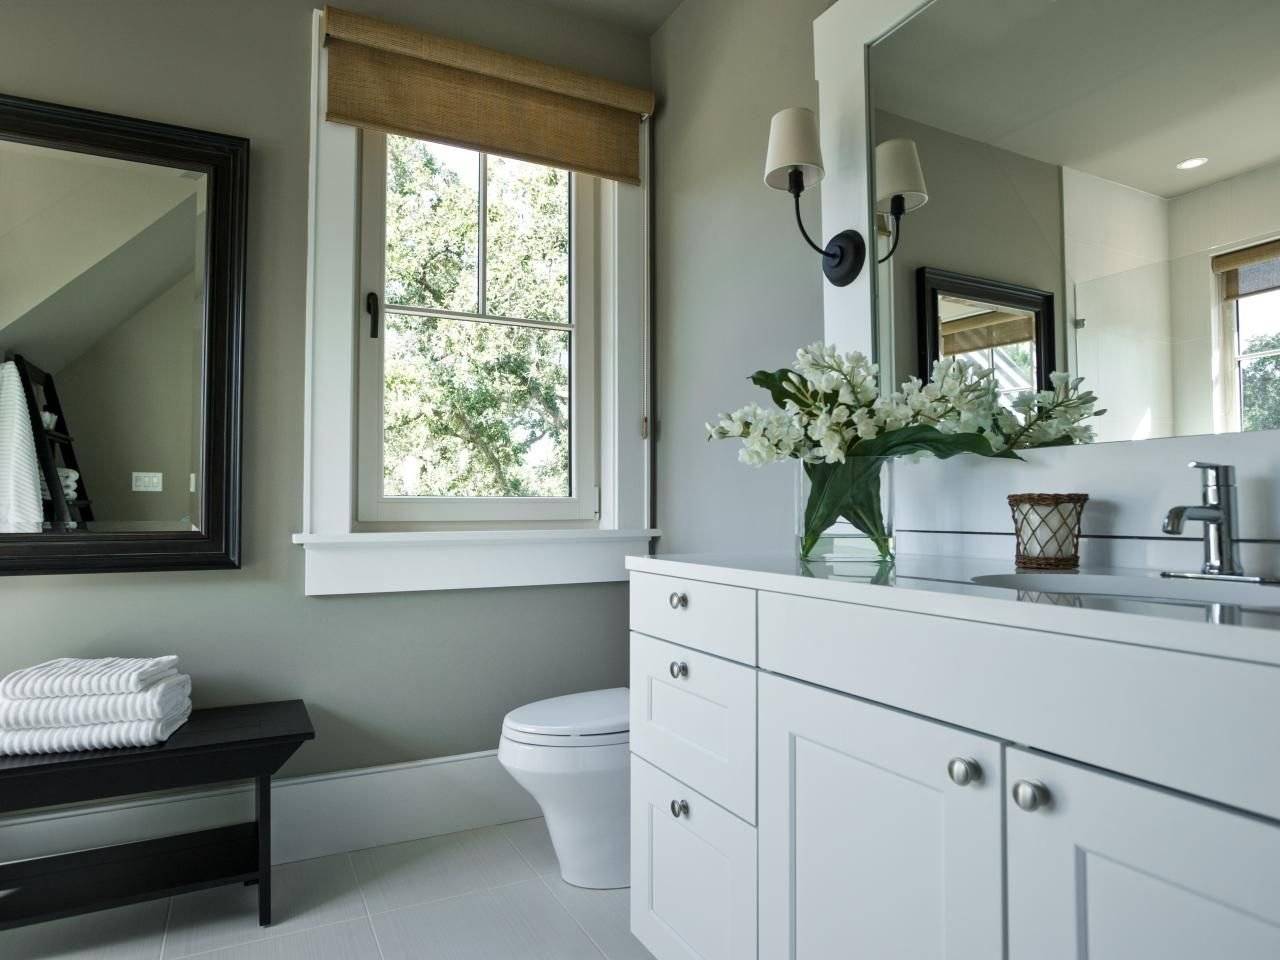 Интерьер ванны с окном: особенности оформления, красивый дизайн на фото